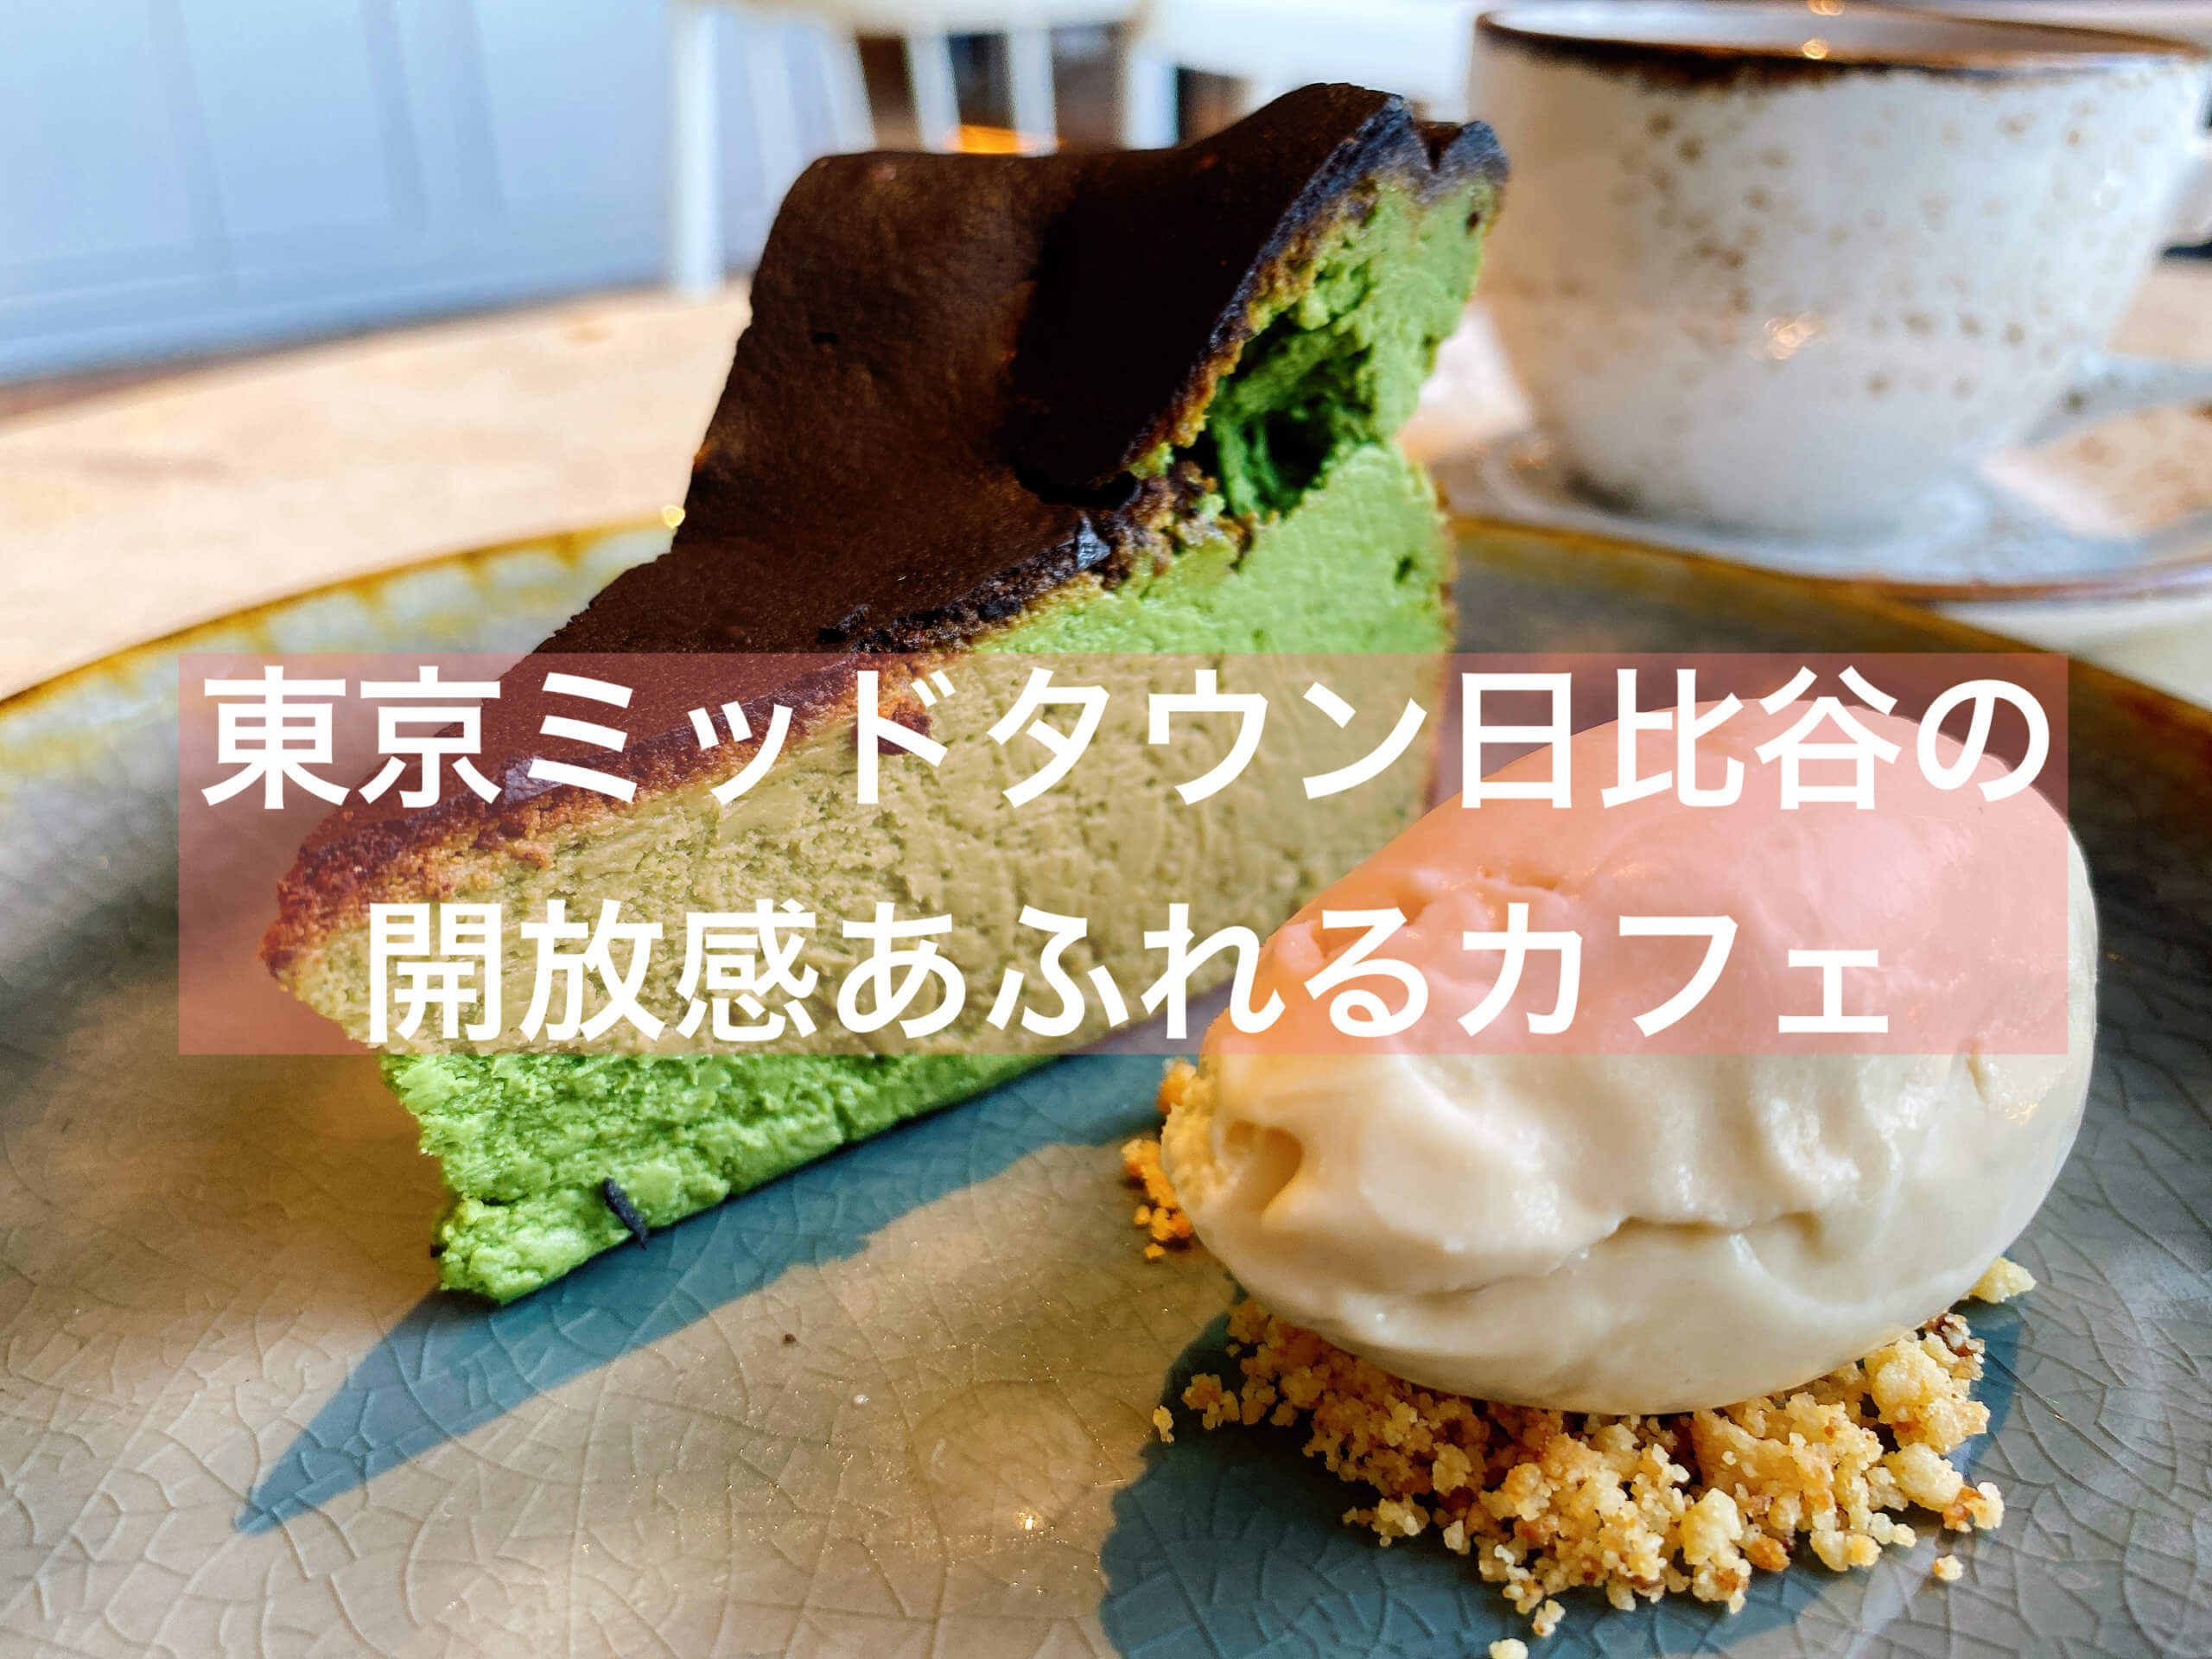 通販 東京ミッドタウン日比谷drawing House Of Hibiyaの抹茶バスチー 日比谷 抹茶スイーツの魅力を発信するブログ Matcha